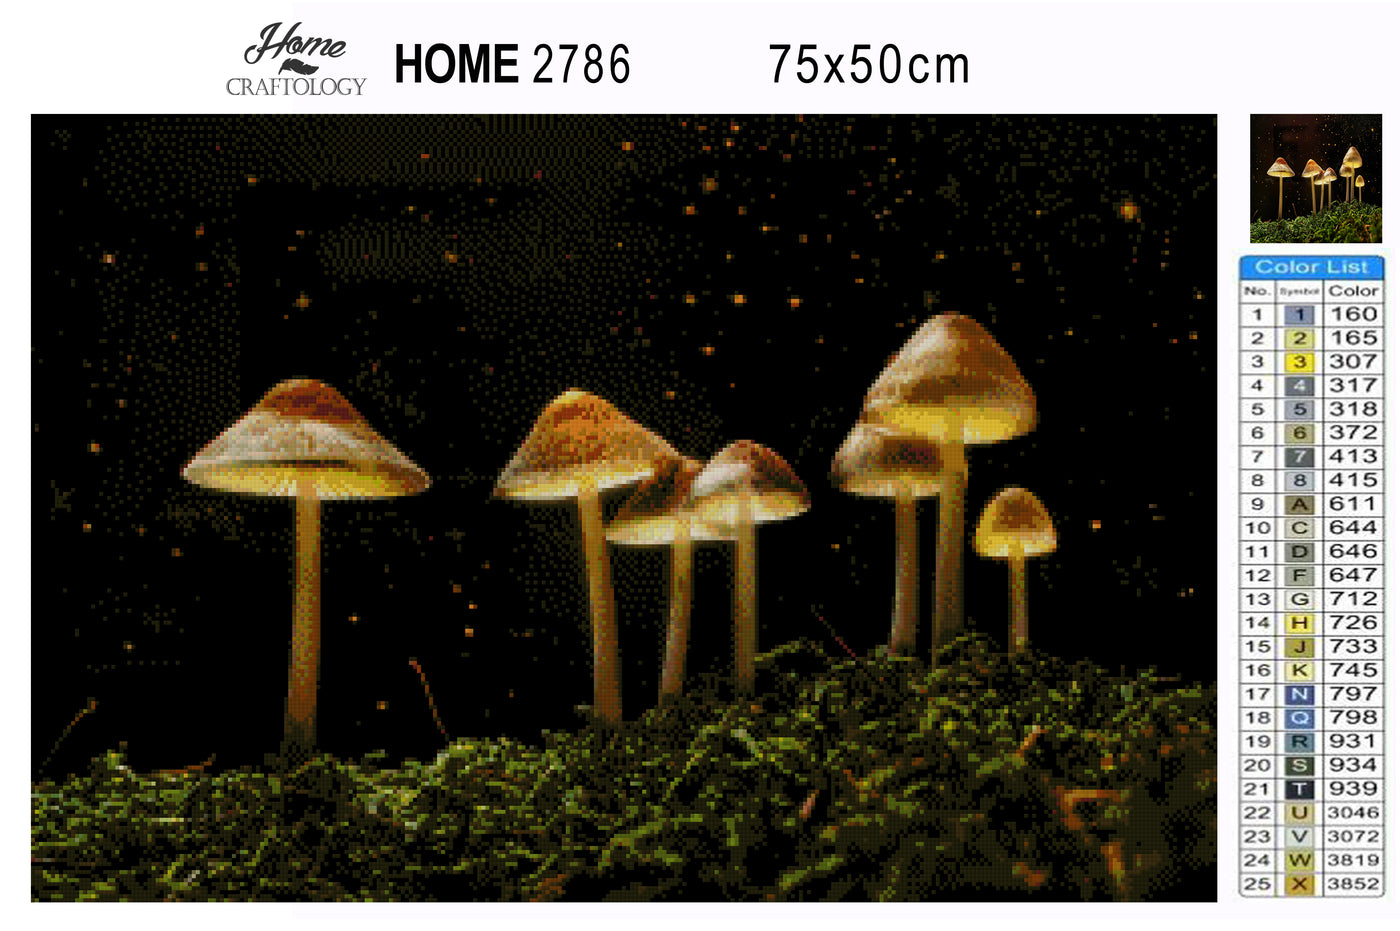 Magical Mushroom - Premium Diamond Painting Kit